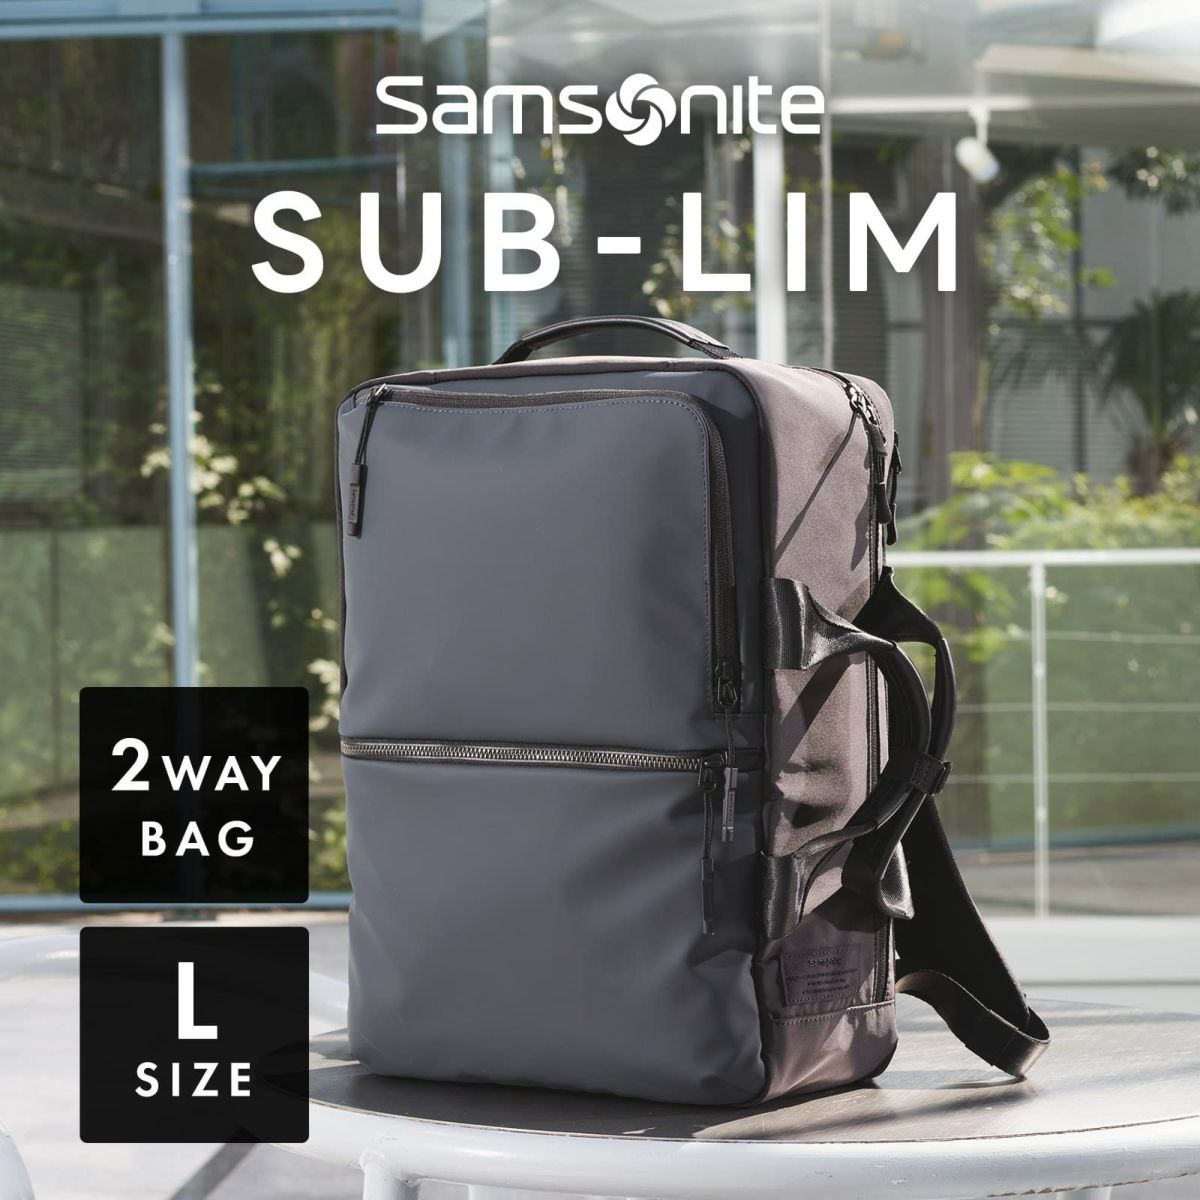 サムソナイト Samsonite , ビジネスバッグ 2way , SUB-LIM 2WAY BAG L